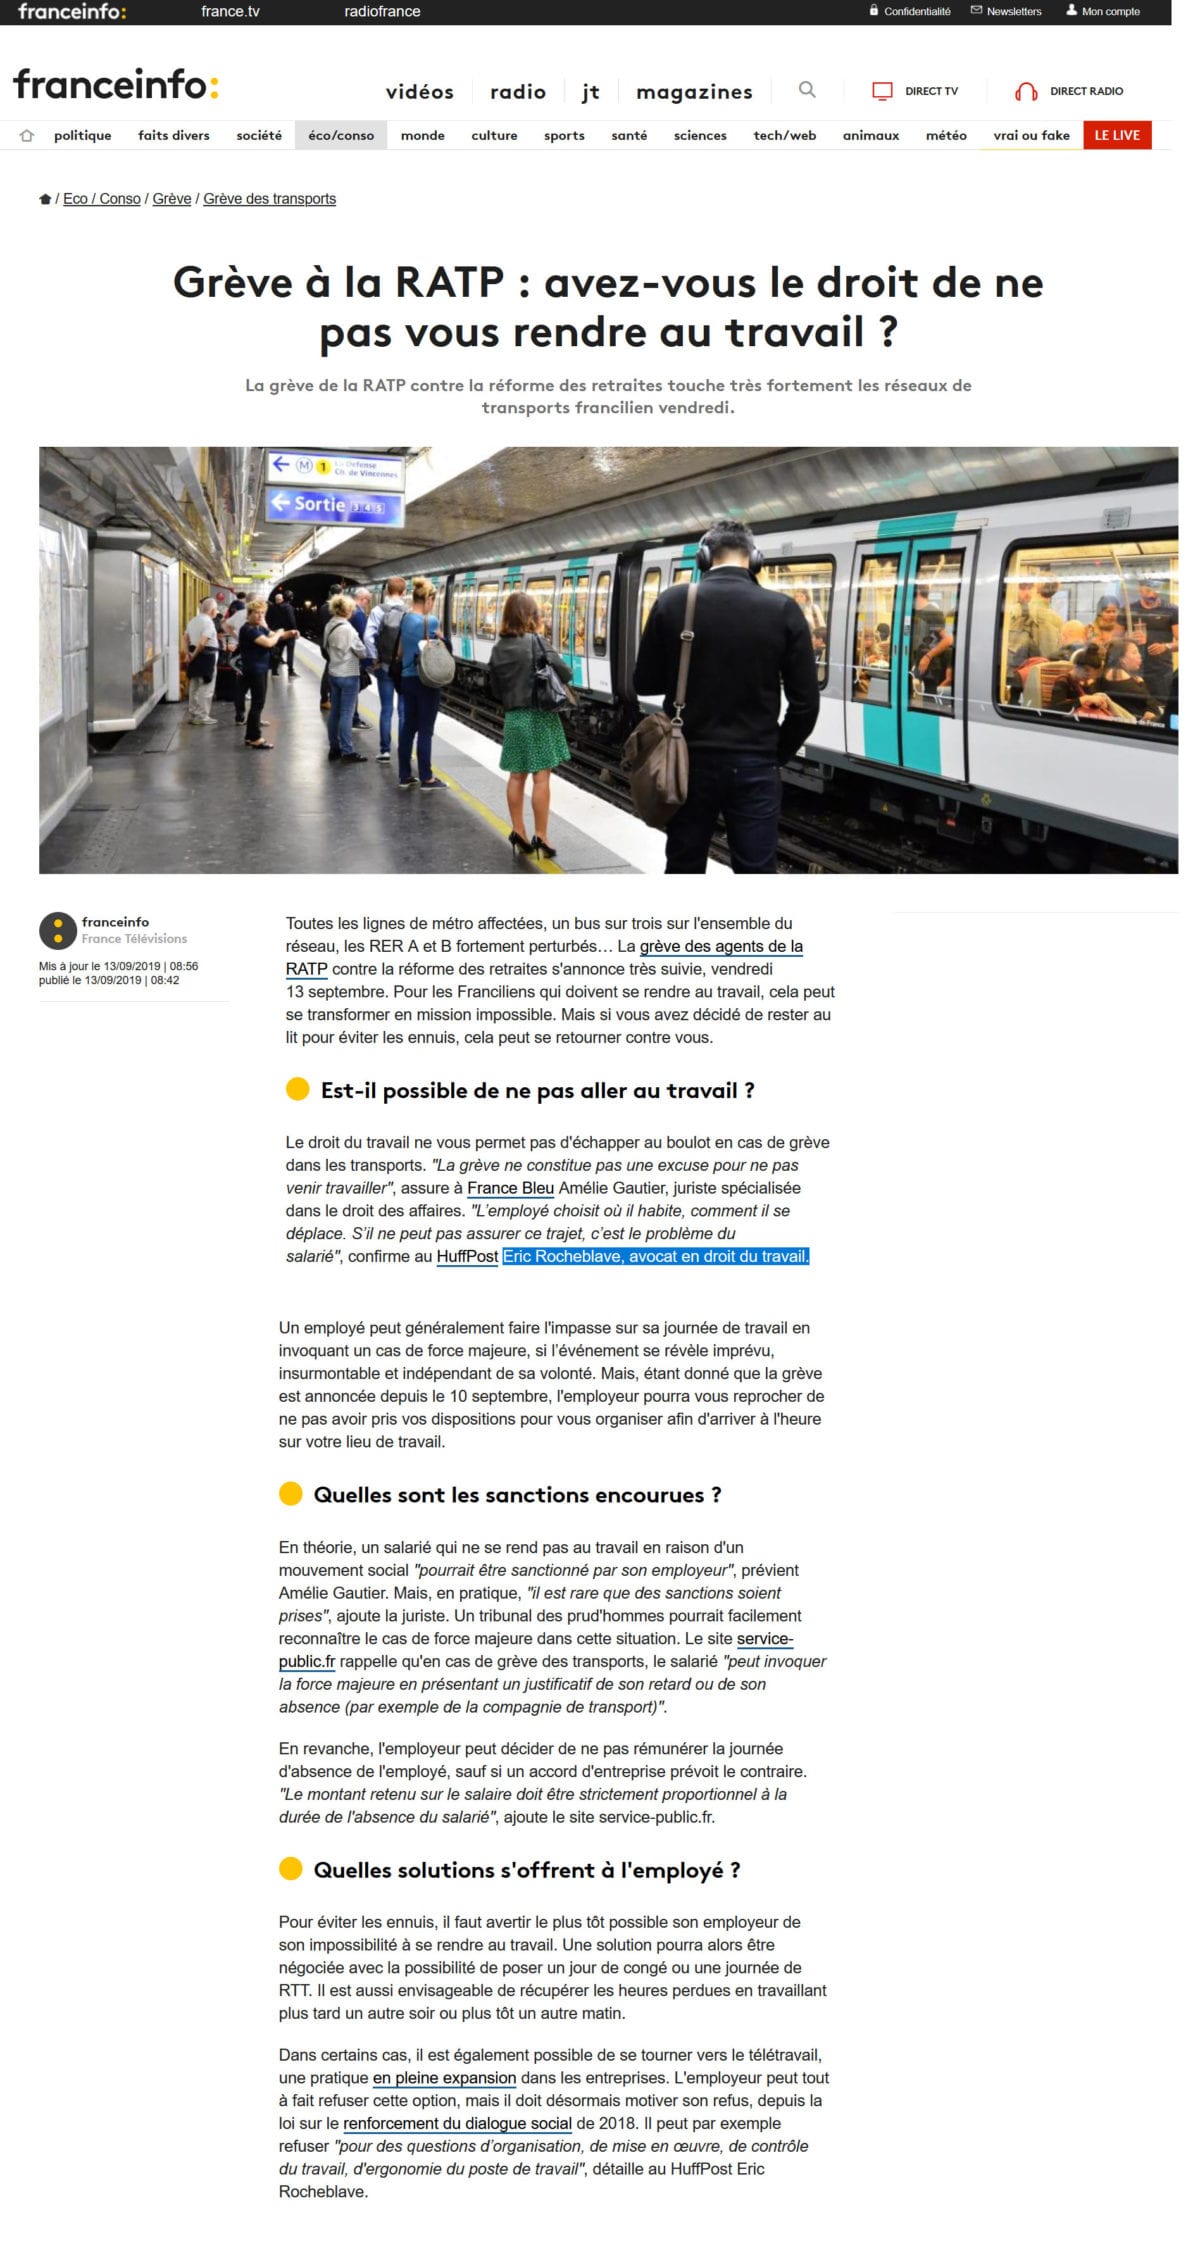 « Grève à la RATP : avez-vous le droit de ne pas vous rendre au travail ? » Interview franceinfo: de Maître Eric ROCHEBLAVE